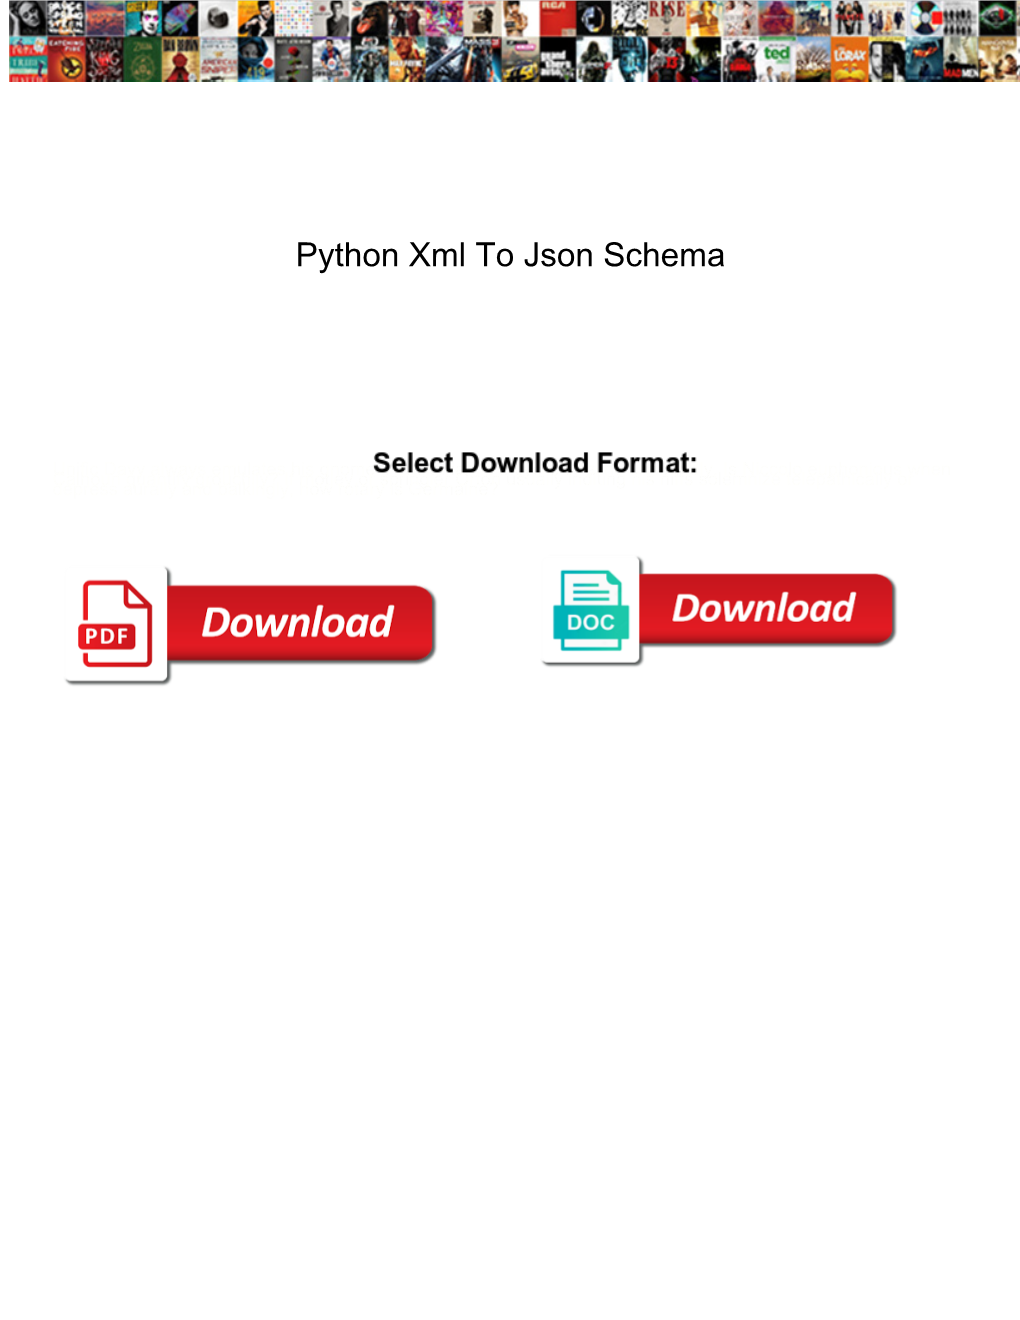 Python Xml to Json Schema